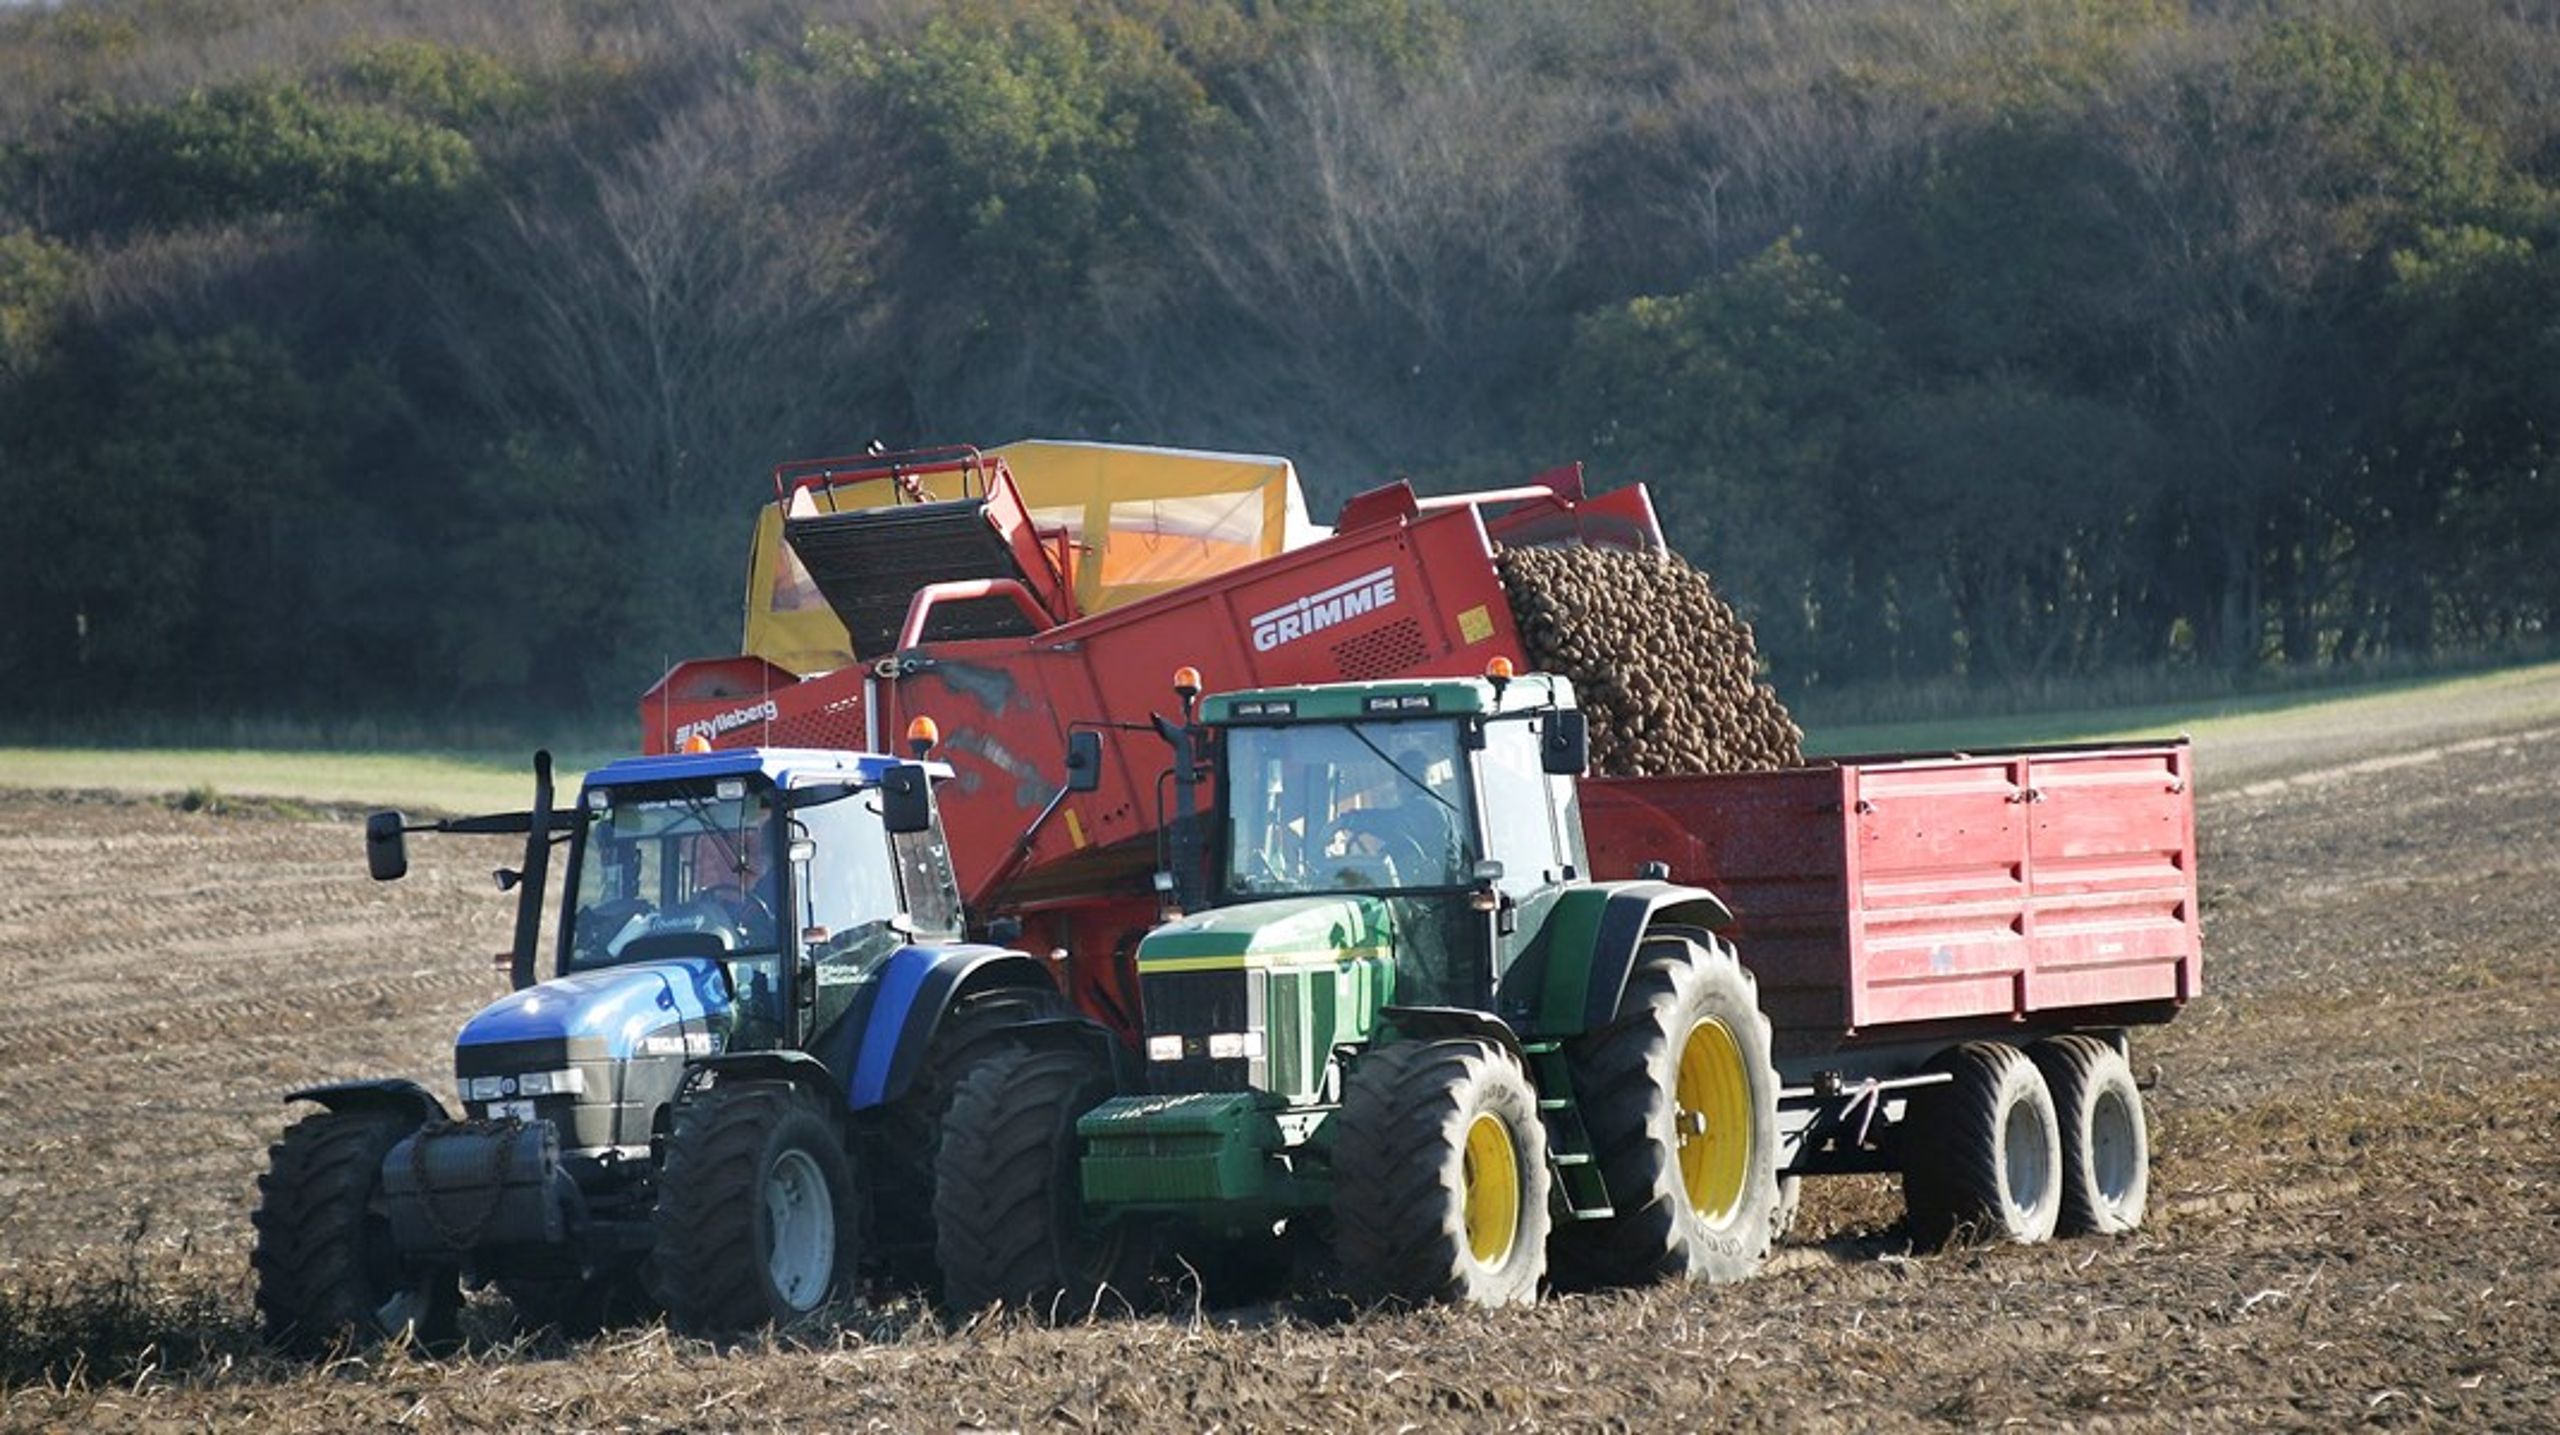 Produktionen af kartofler er blandt de typer af landbrug, der vil blive allerhårdest ramt af regeringens forslag til at implementere EU's kommende landbrugspolitik. ARKIVFOTO.